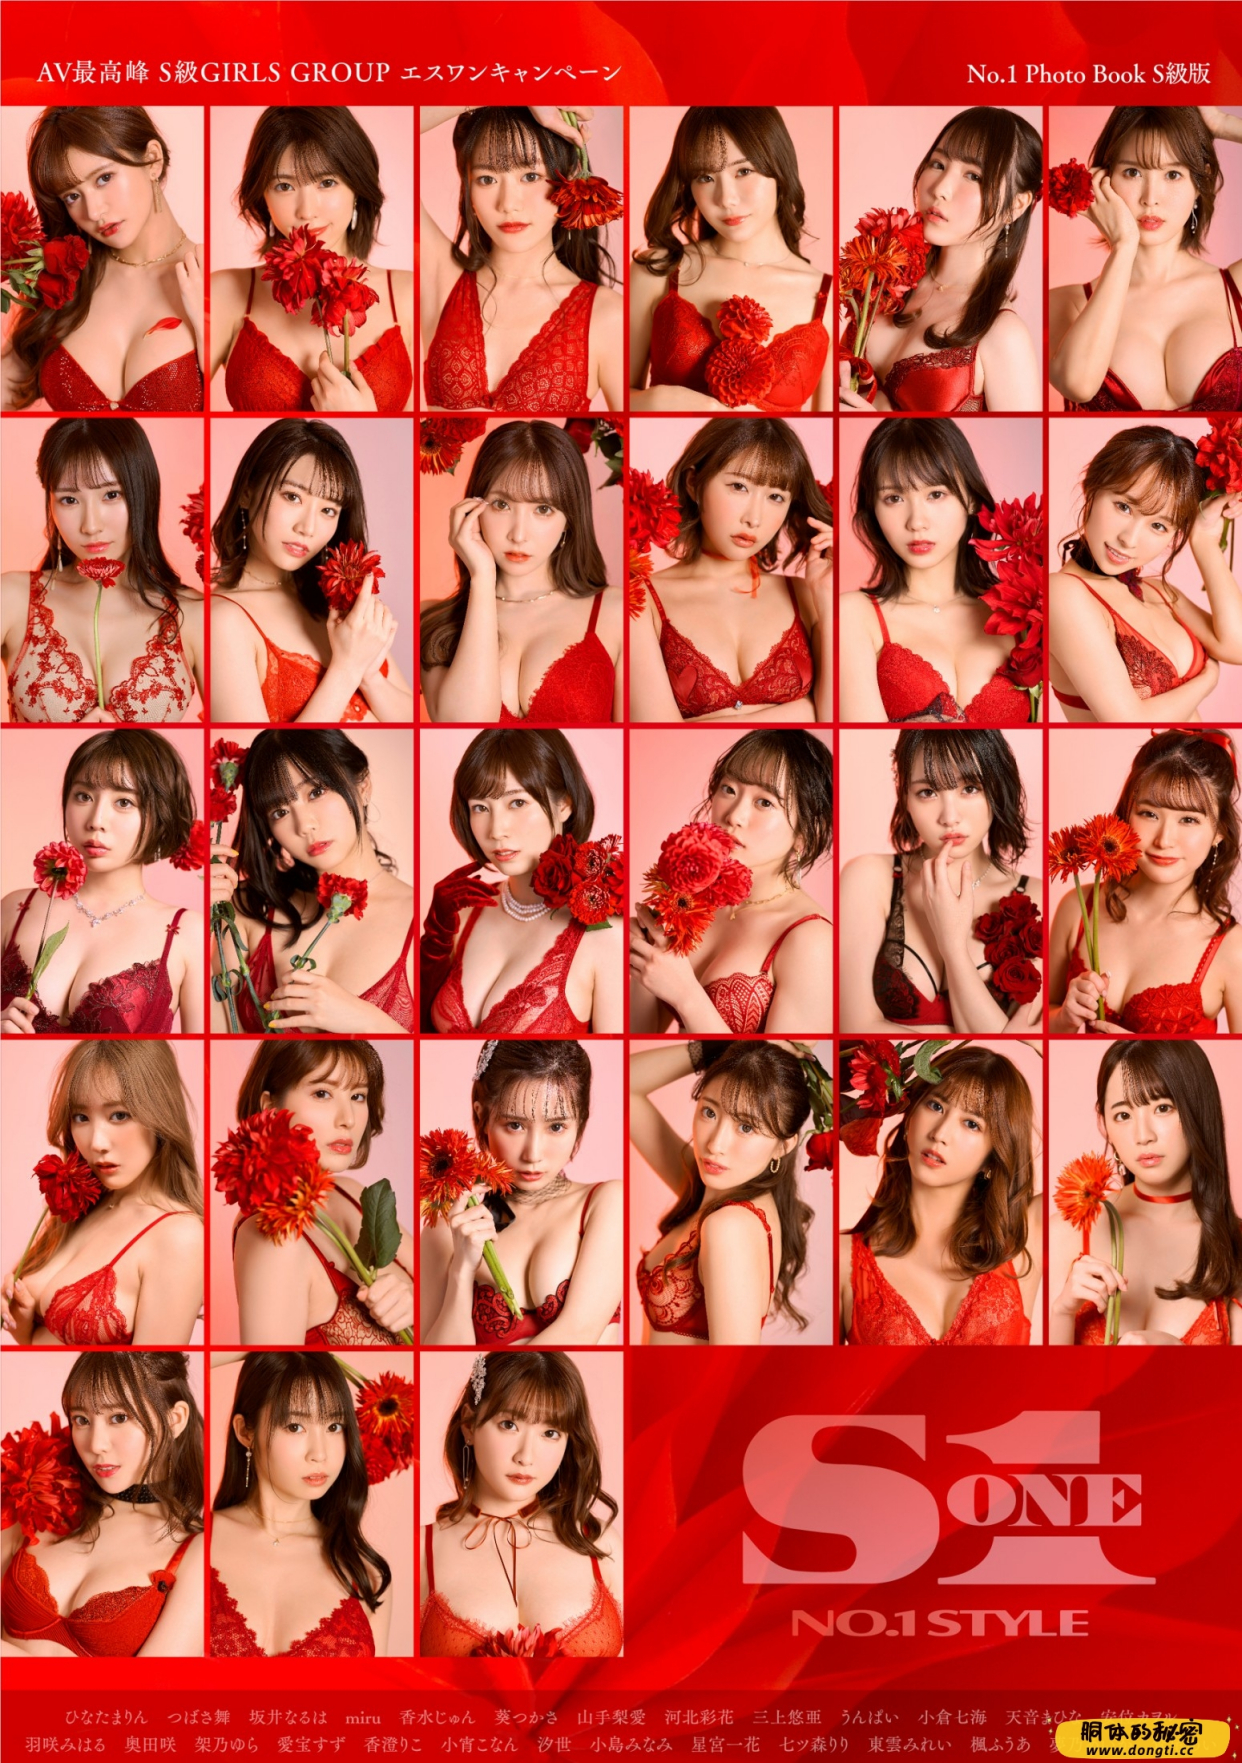 AV最高峰 S級GIRLS GROUP エスワンキャンペーン No.1 Photo Book S級版